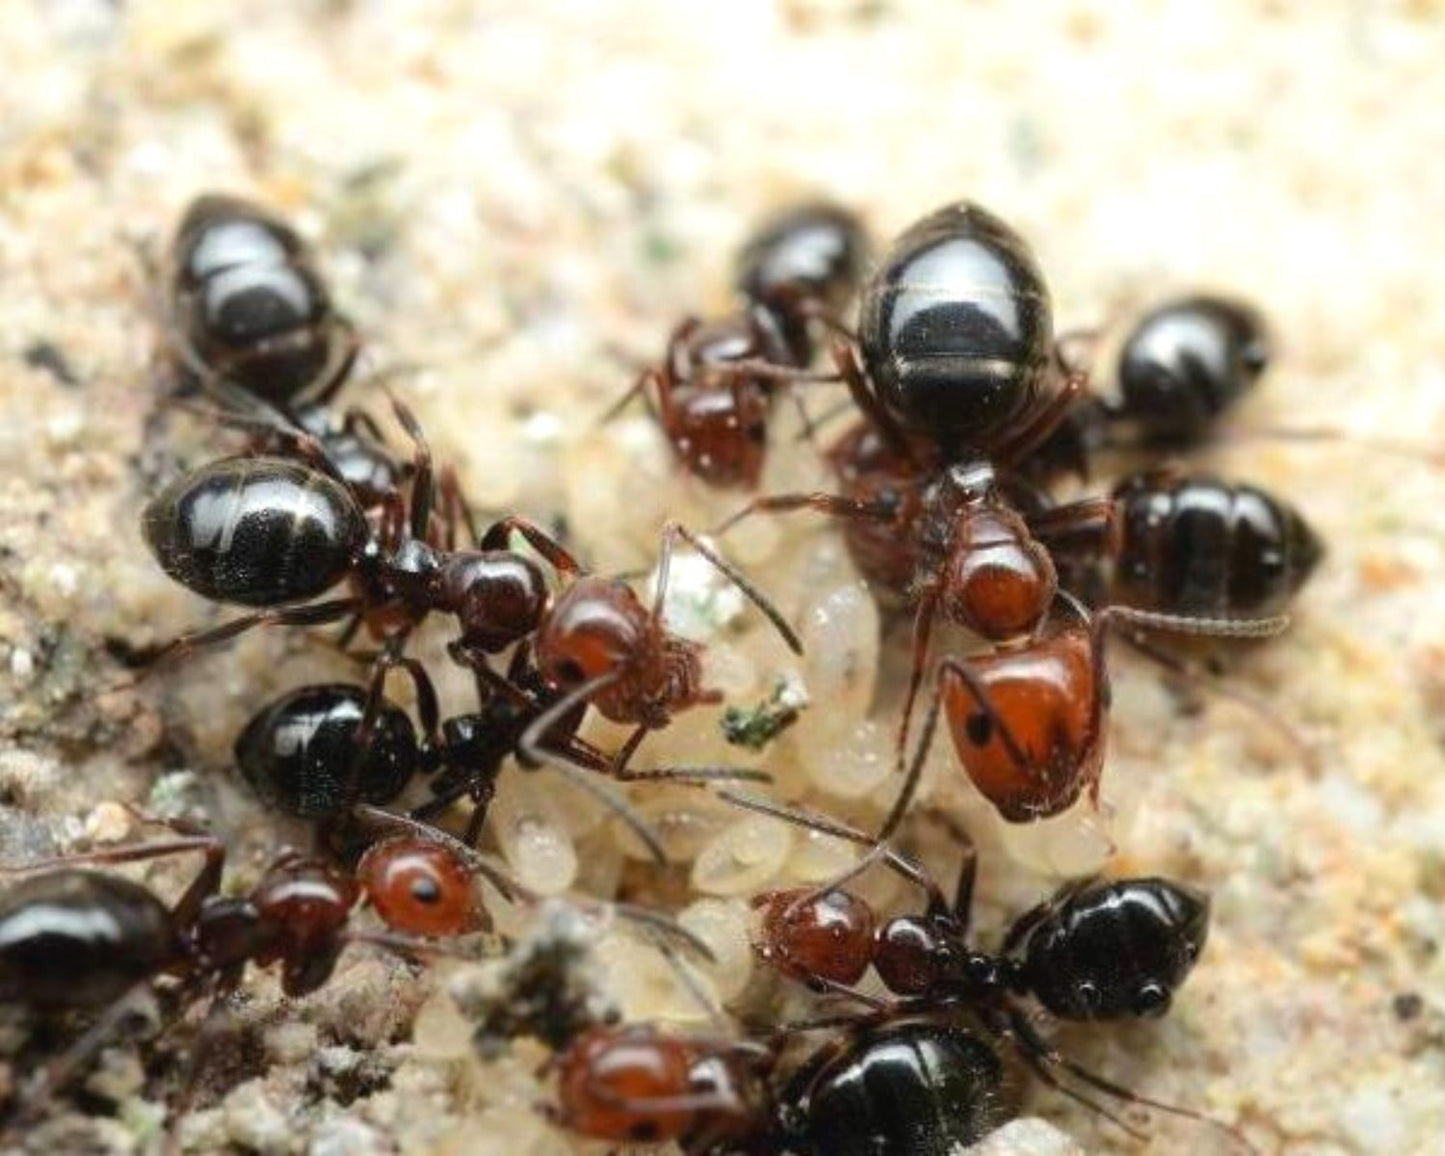 Hormigas - Camponotus lateralis